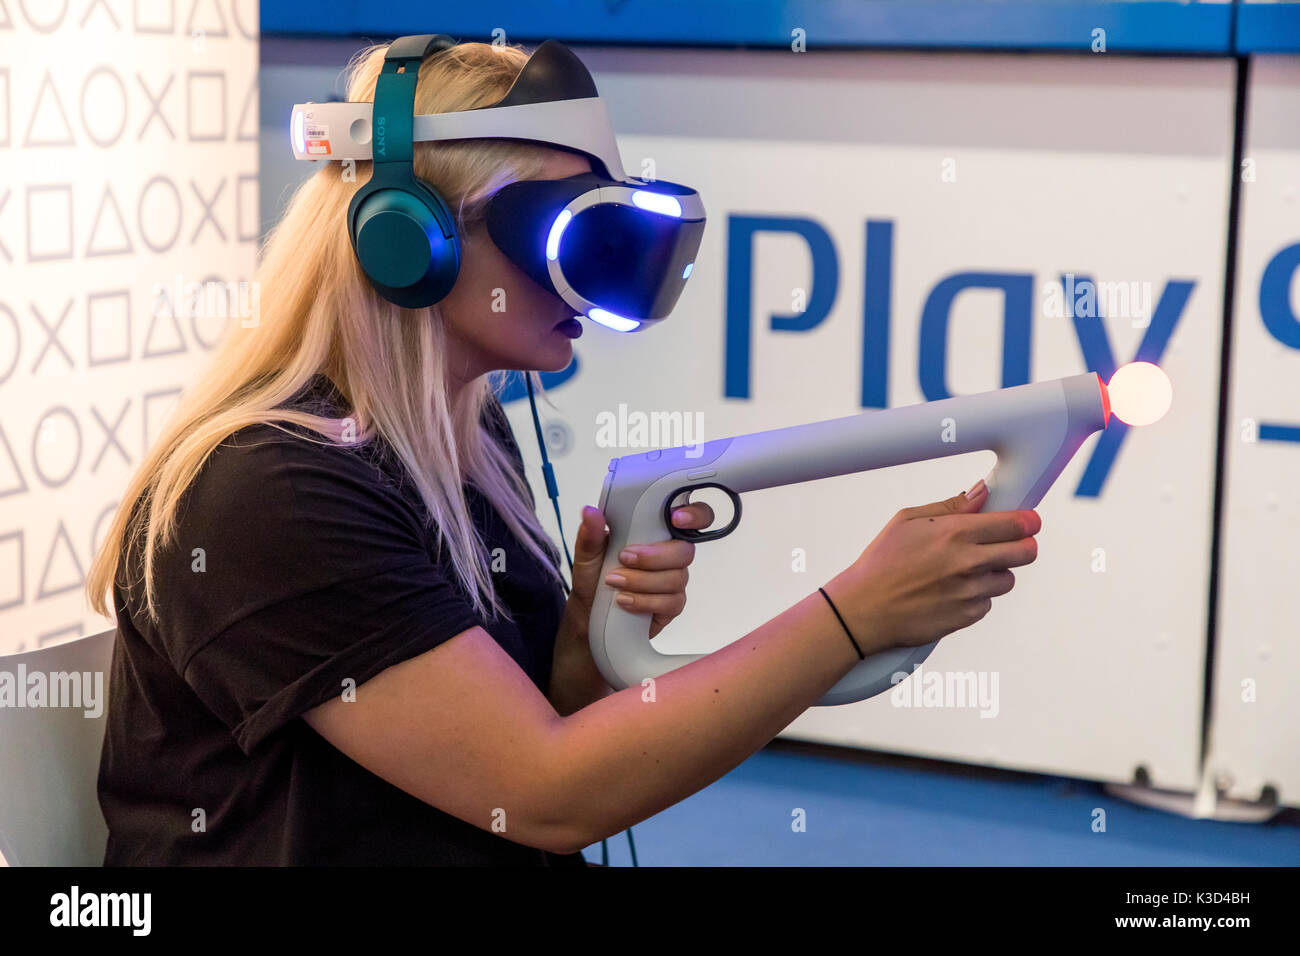 La gamescom, le plus grand salon de jeux vidéo et informatiques, à Cologne, en Allemagne, les jeux de réalité virtuelle, l'utilisation des visiteurs casque de réalité virtuelle Banque D'Images